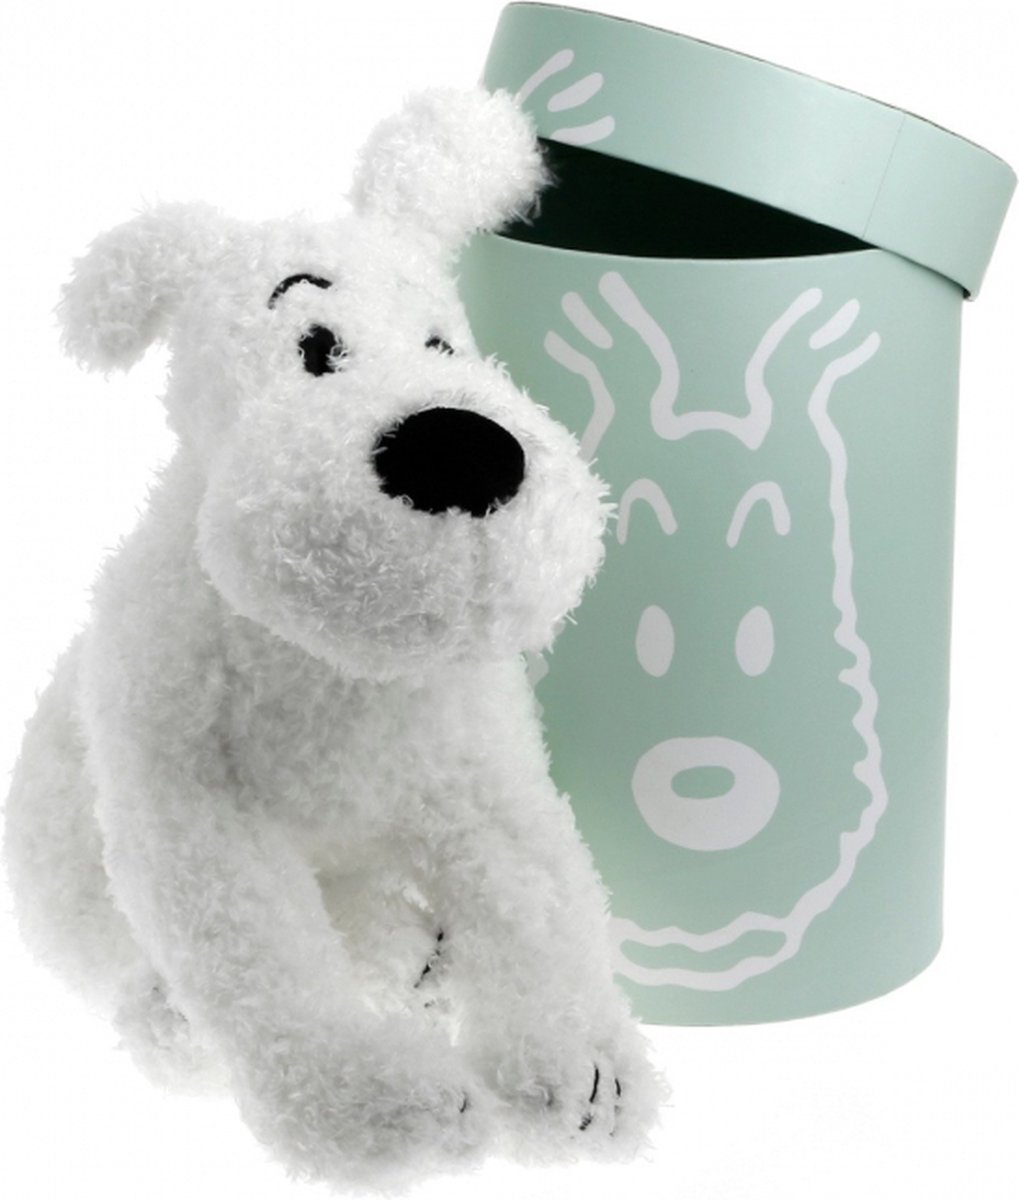 Kuifje - Knuffel - Hond - Bobbie - Superzachte Knuffel in een mooie geschenkdoos - Hoogte 37 cm - Officiële Kuifje uitgave.